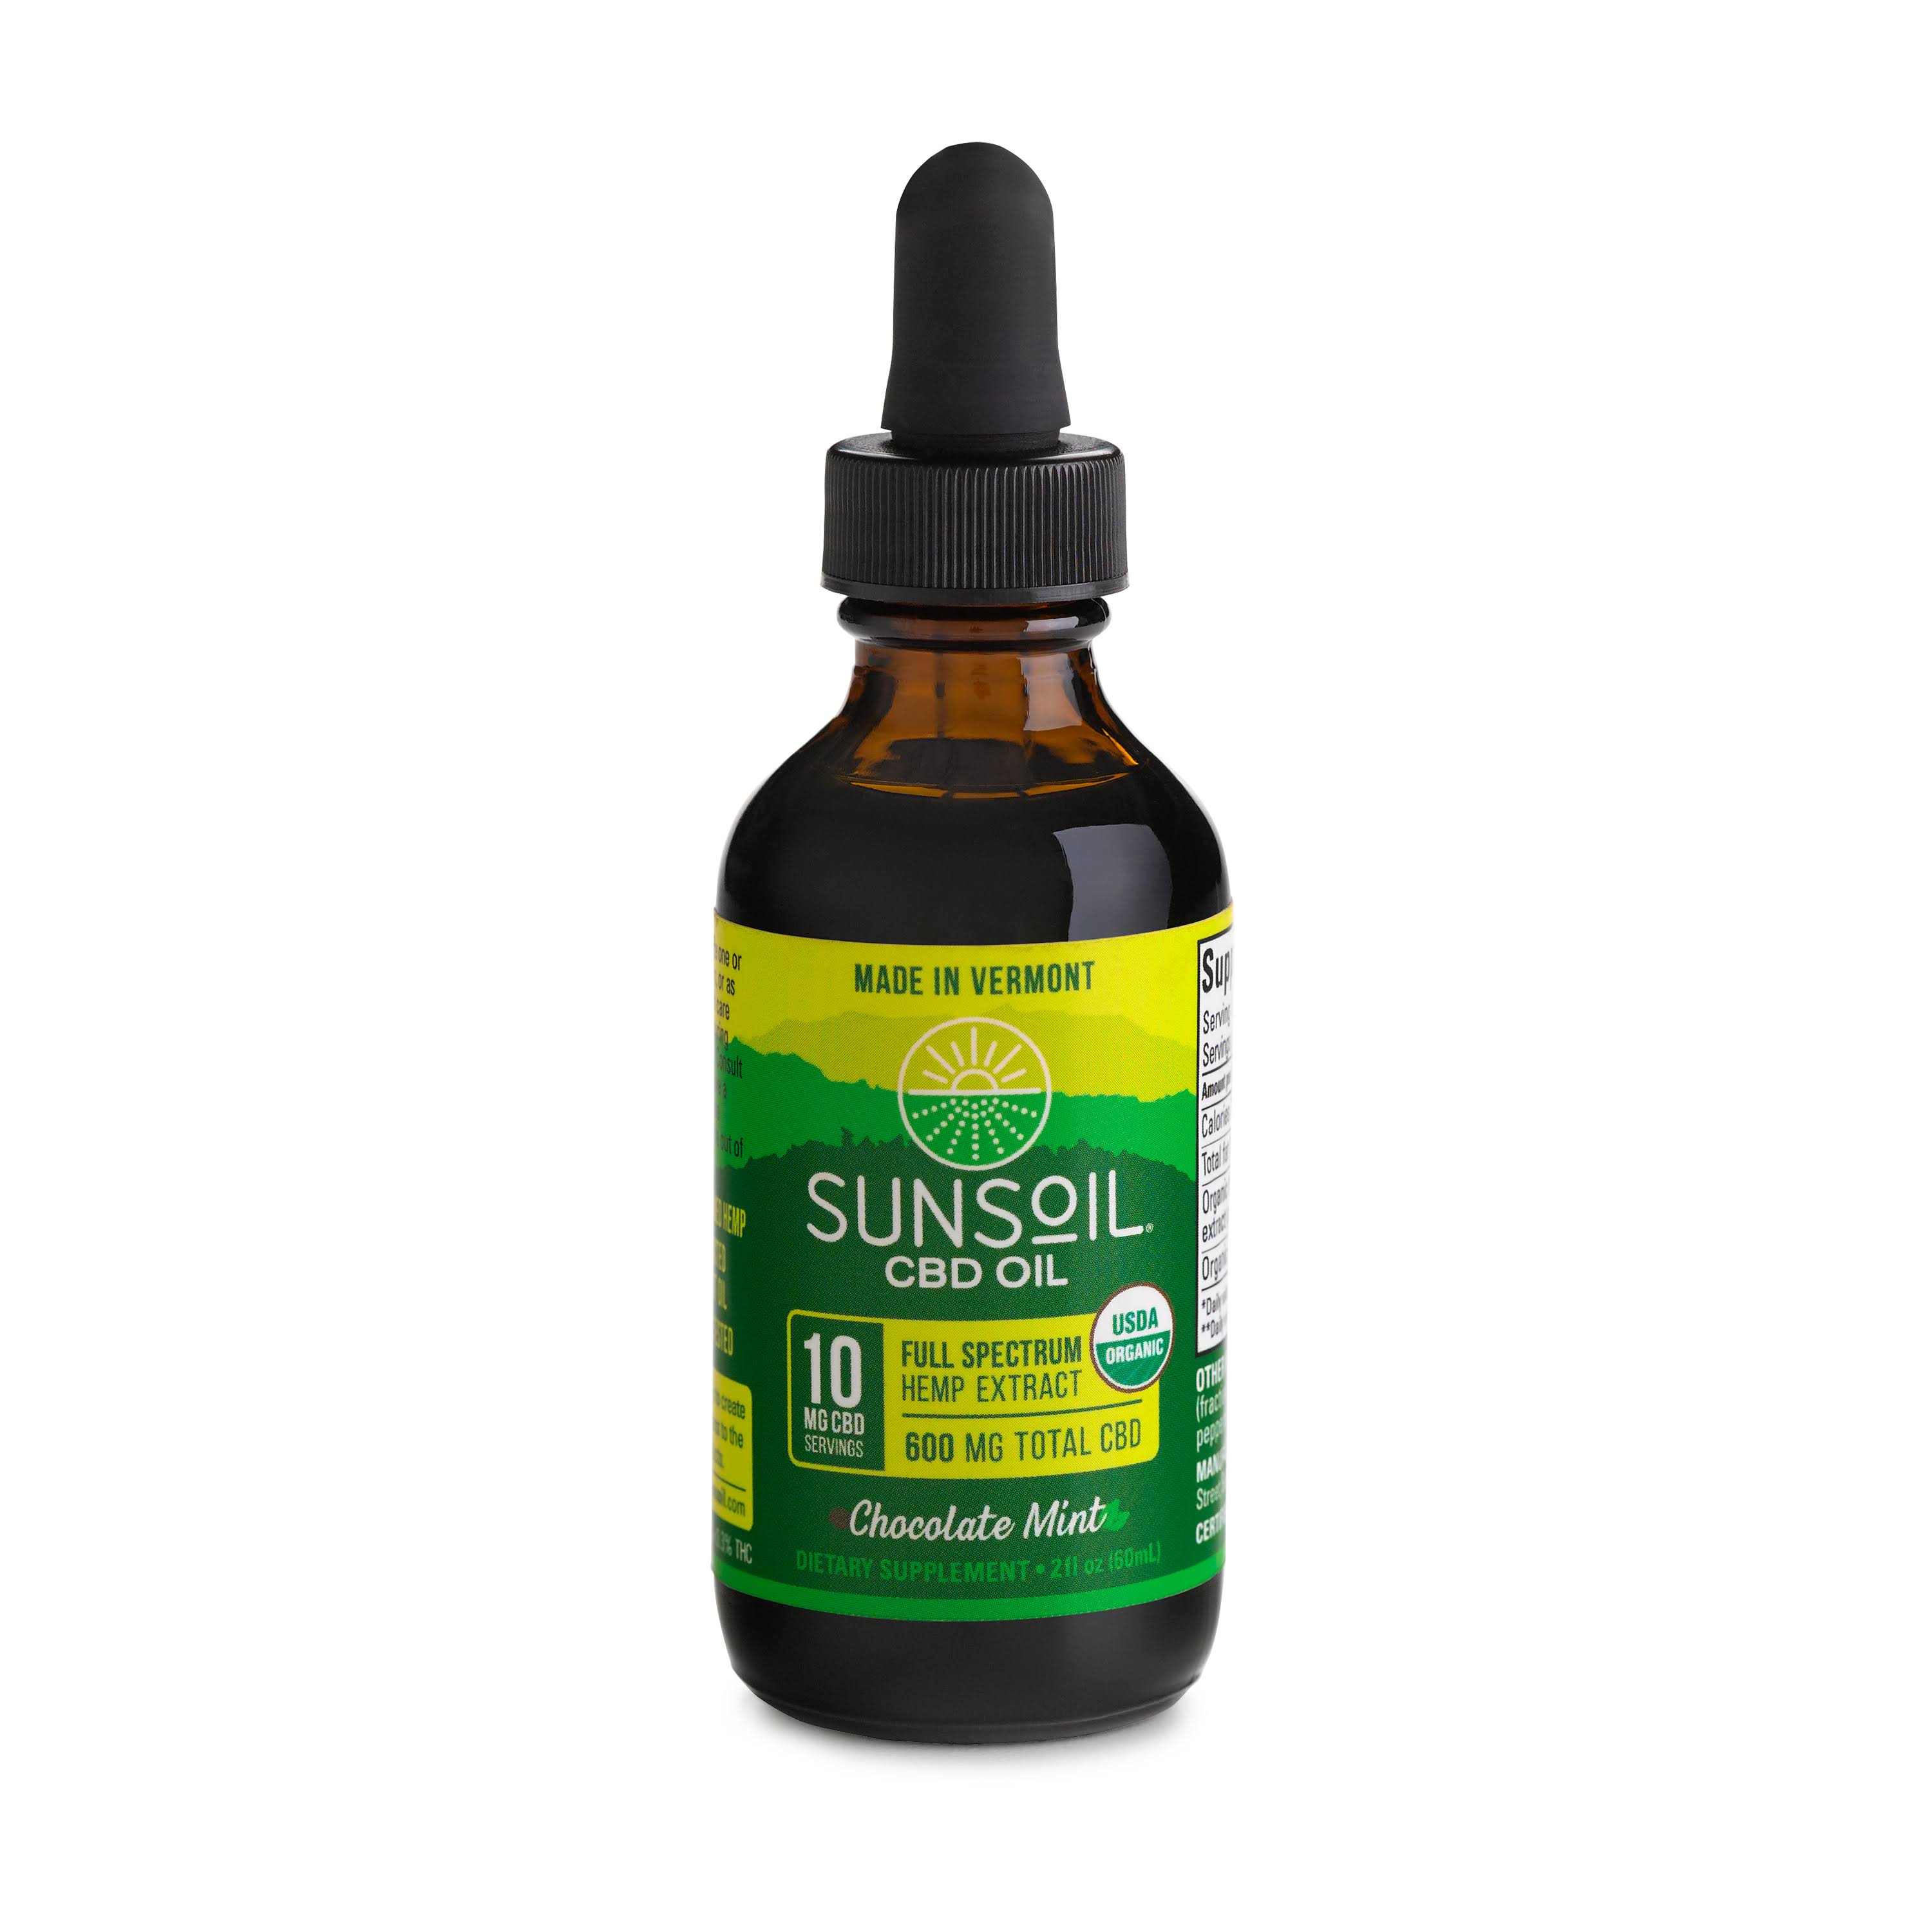 Sunsoil CBD Oil, 600 mg, Chocolate Mint - 2 fl oz